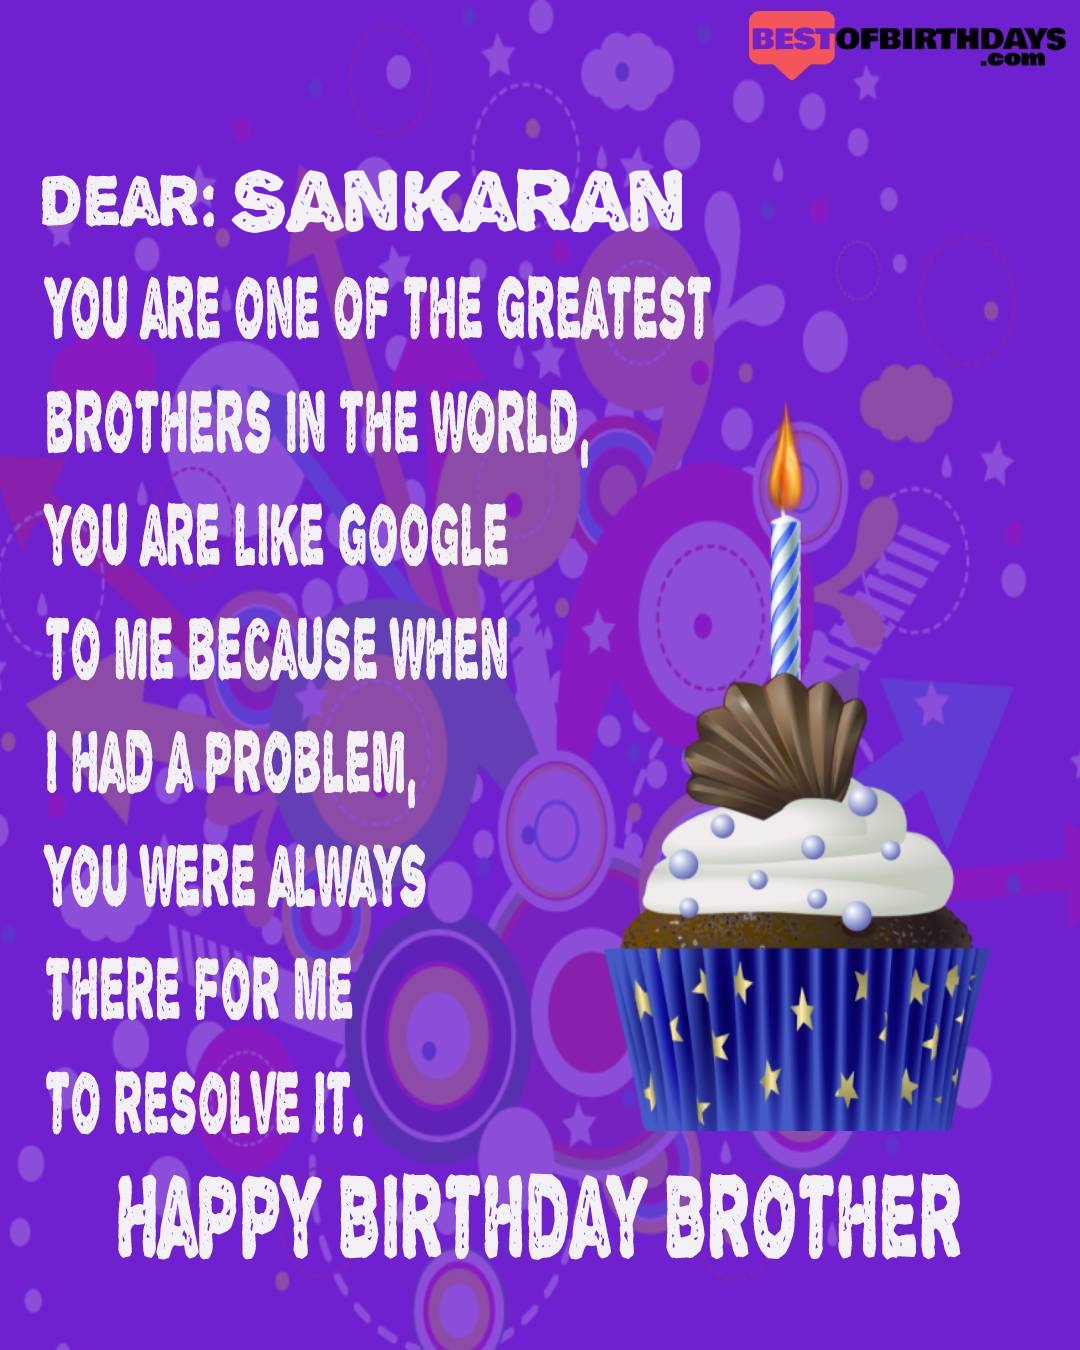 Happy birthday sankaran bhai brother bro